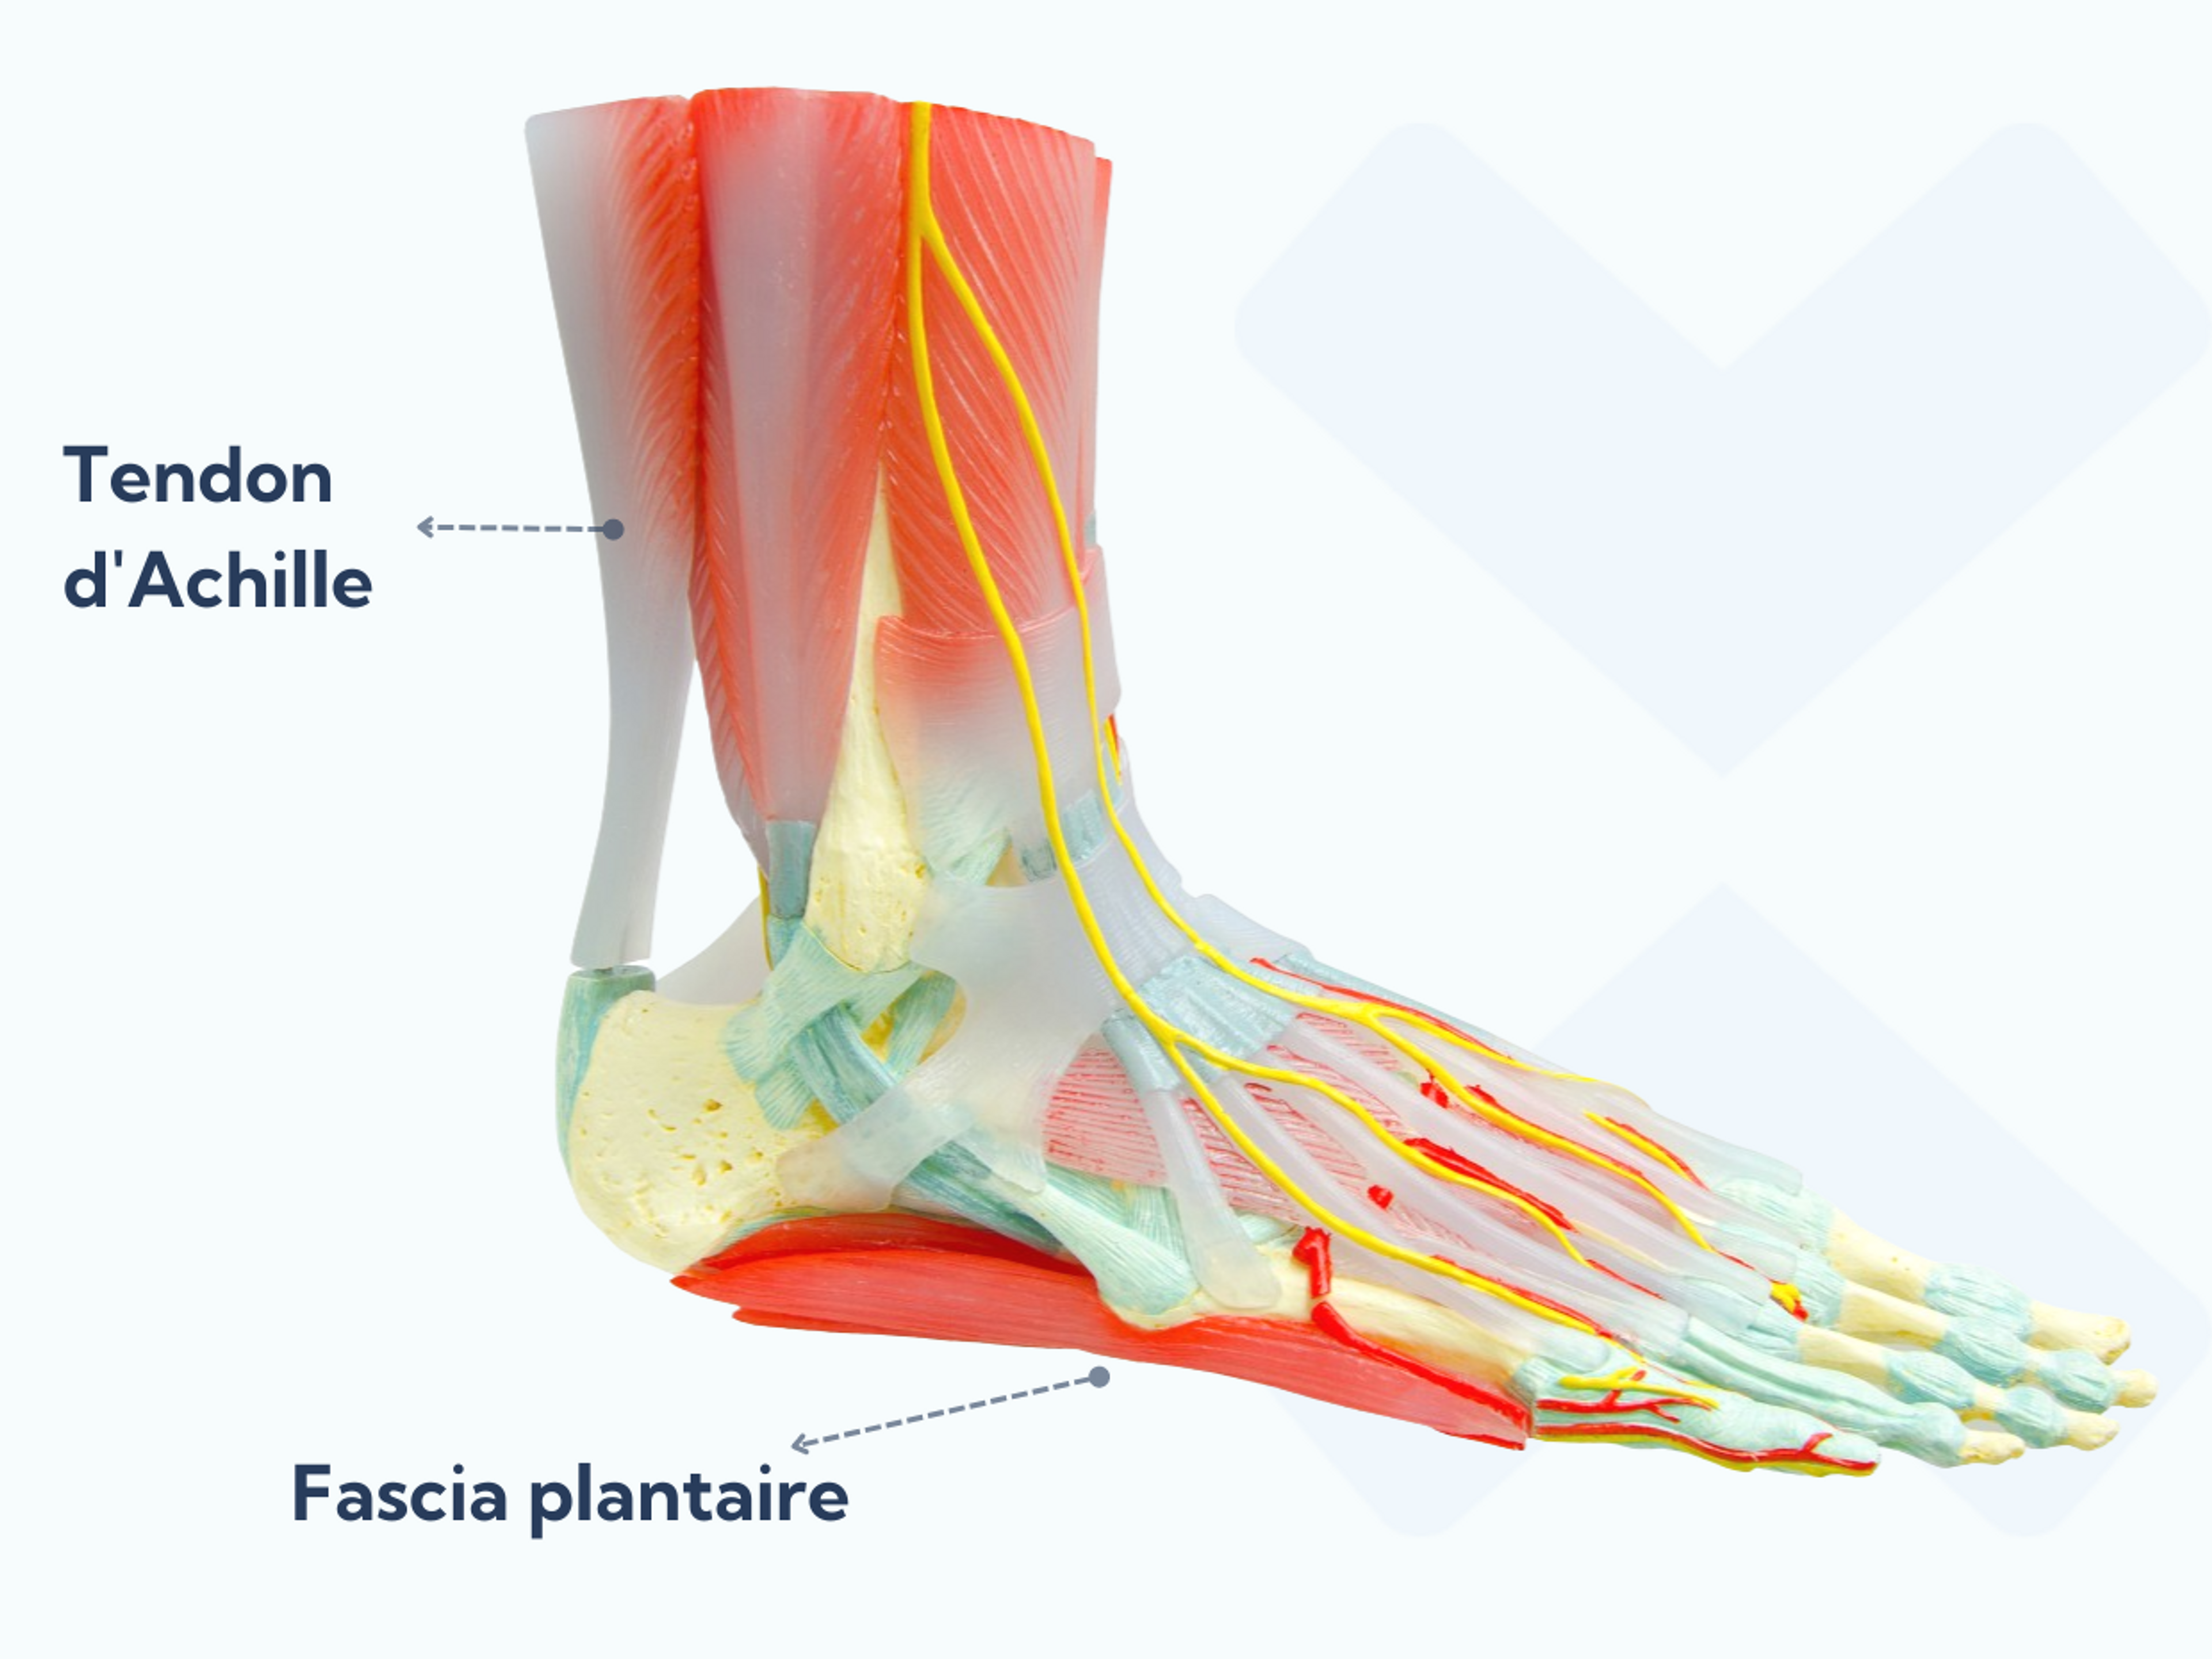 Le fascia plantaire va de l’os du talon aux orteils et empêche la voûte plantaire de s’affaisser lorsque vous vous tenez debout. Le tendon d’Achille part des muscles du mollet et s’attache à l’arrière du talon.